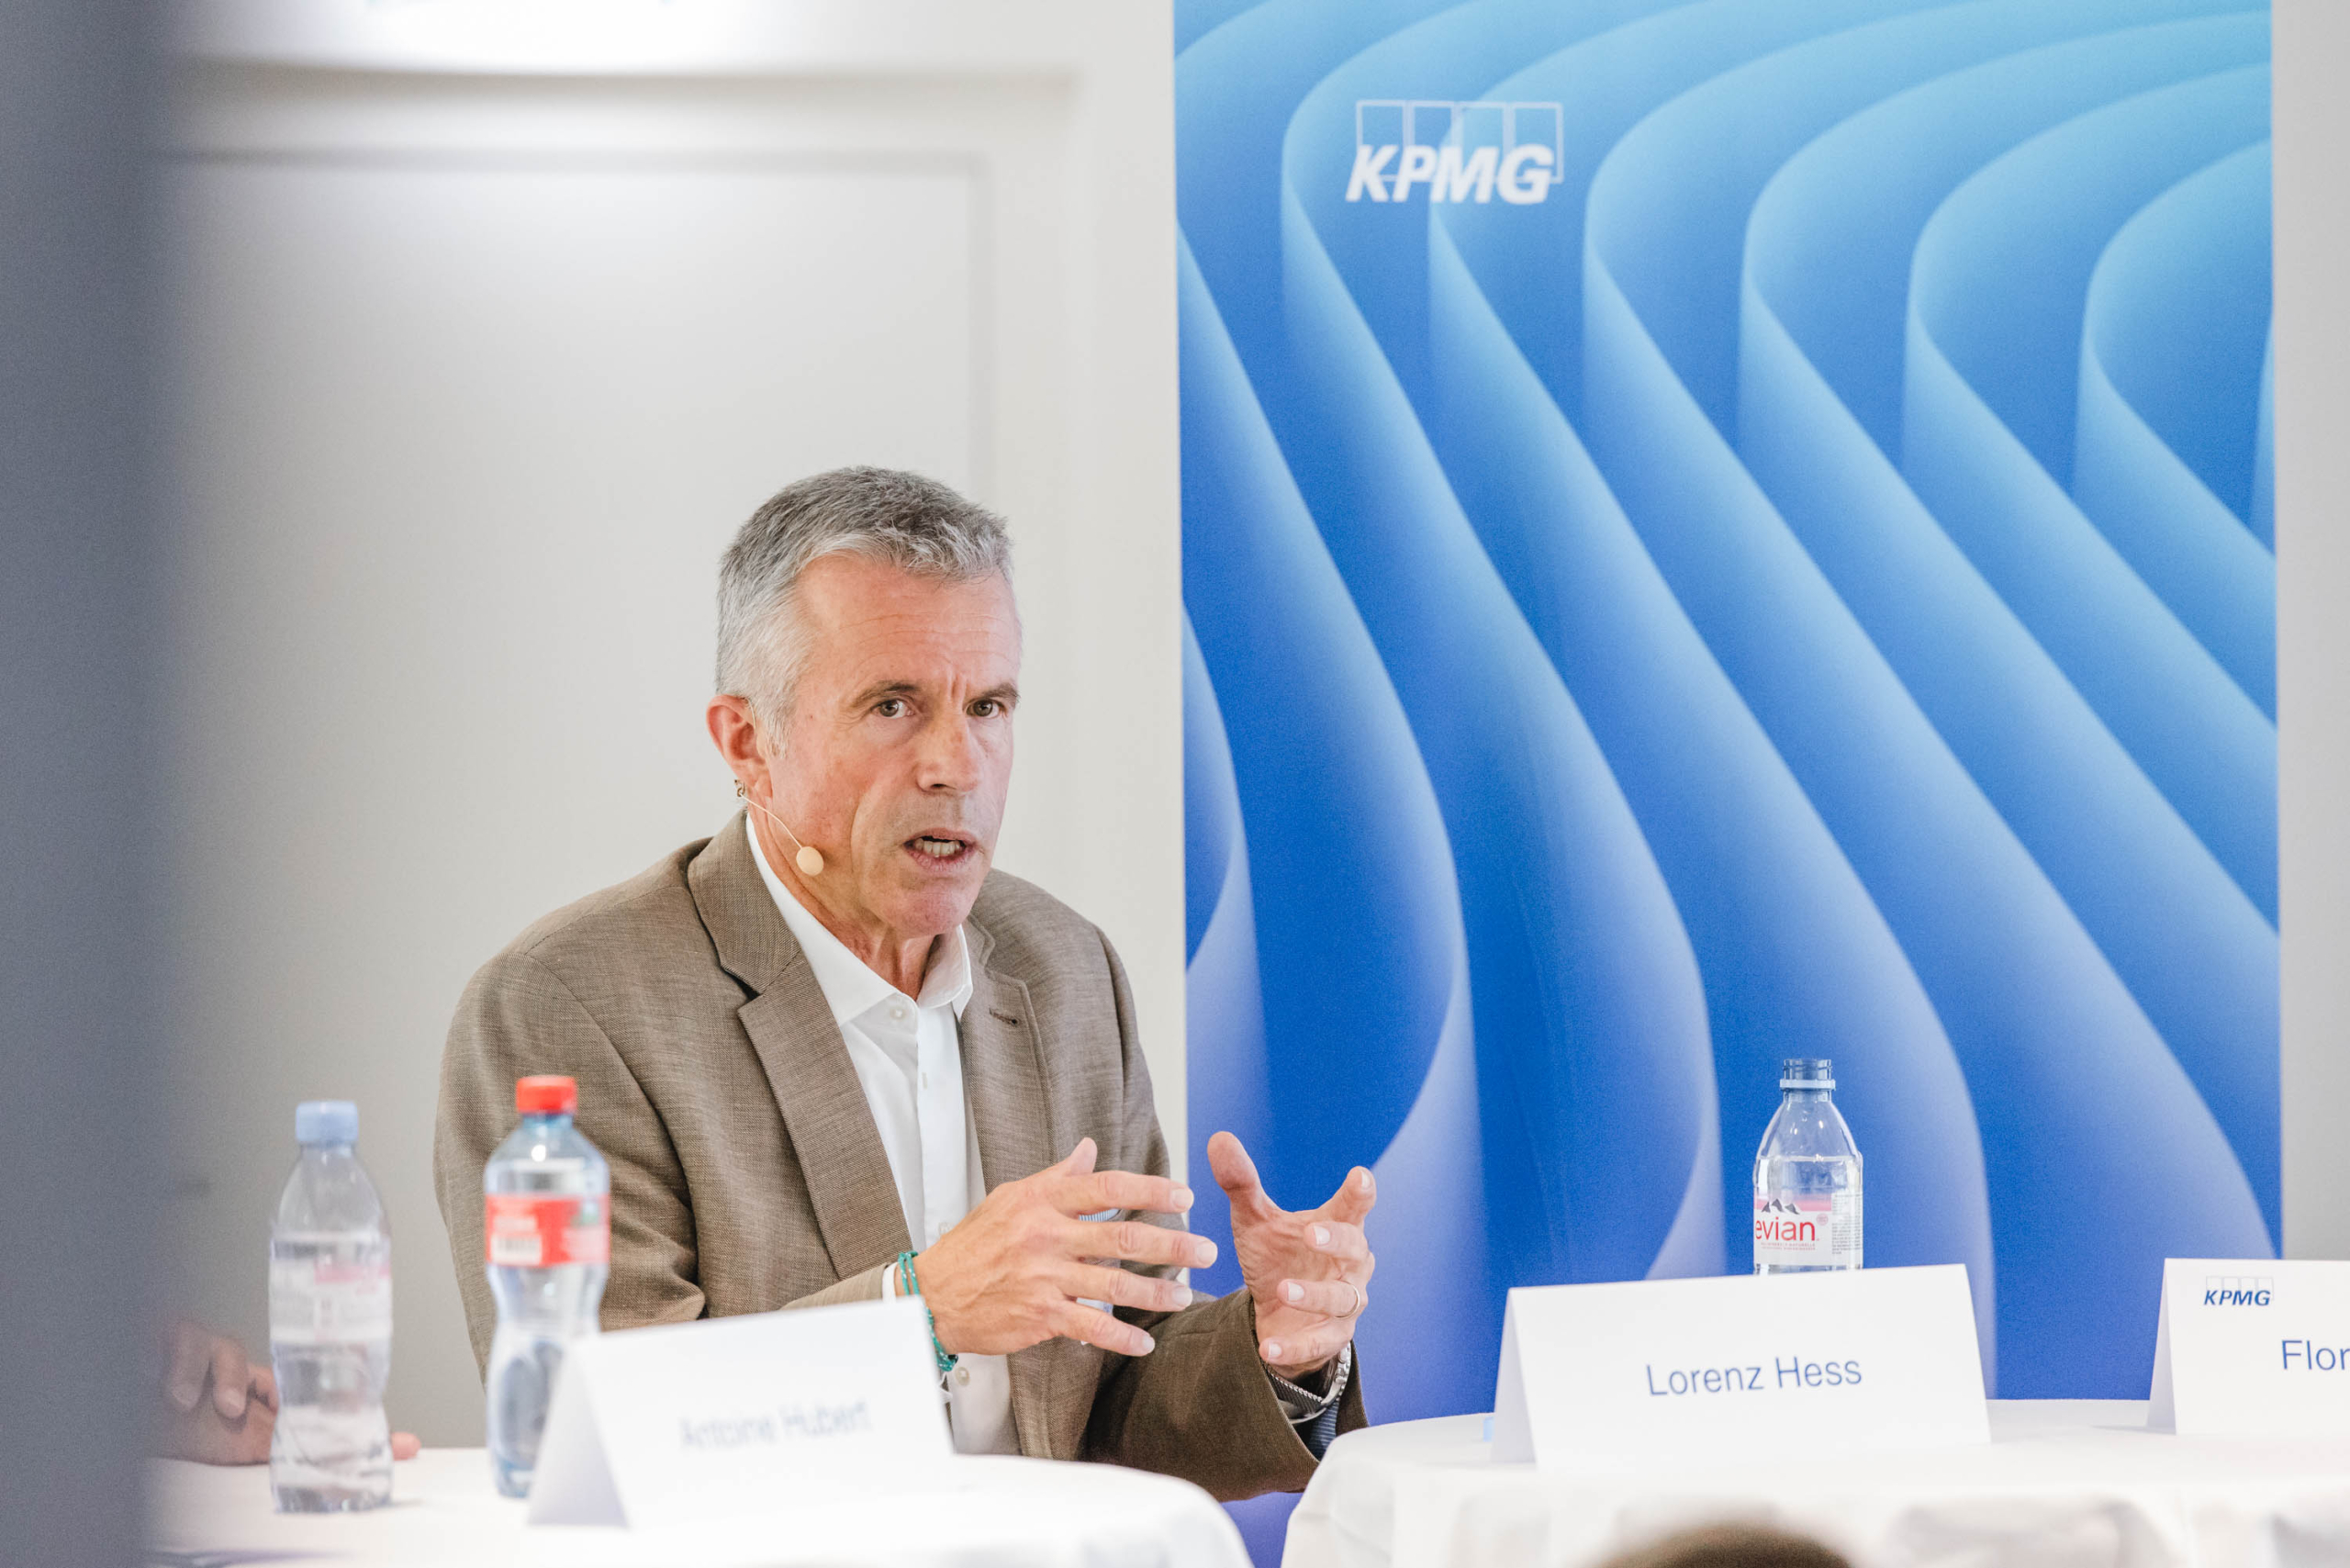 Lorenz Hess am KPMG-Event